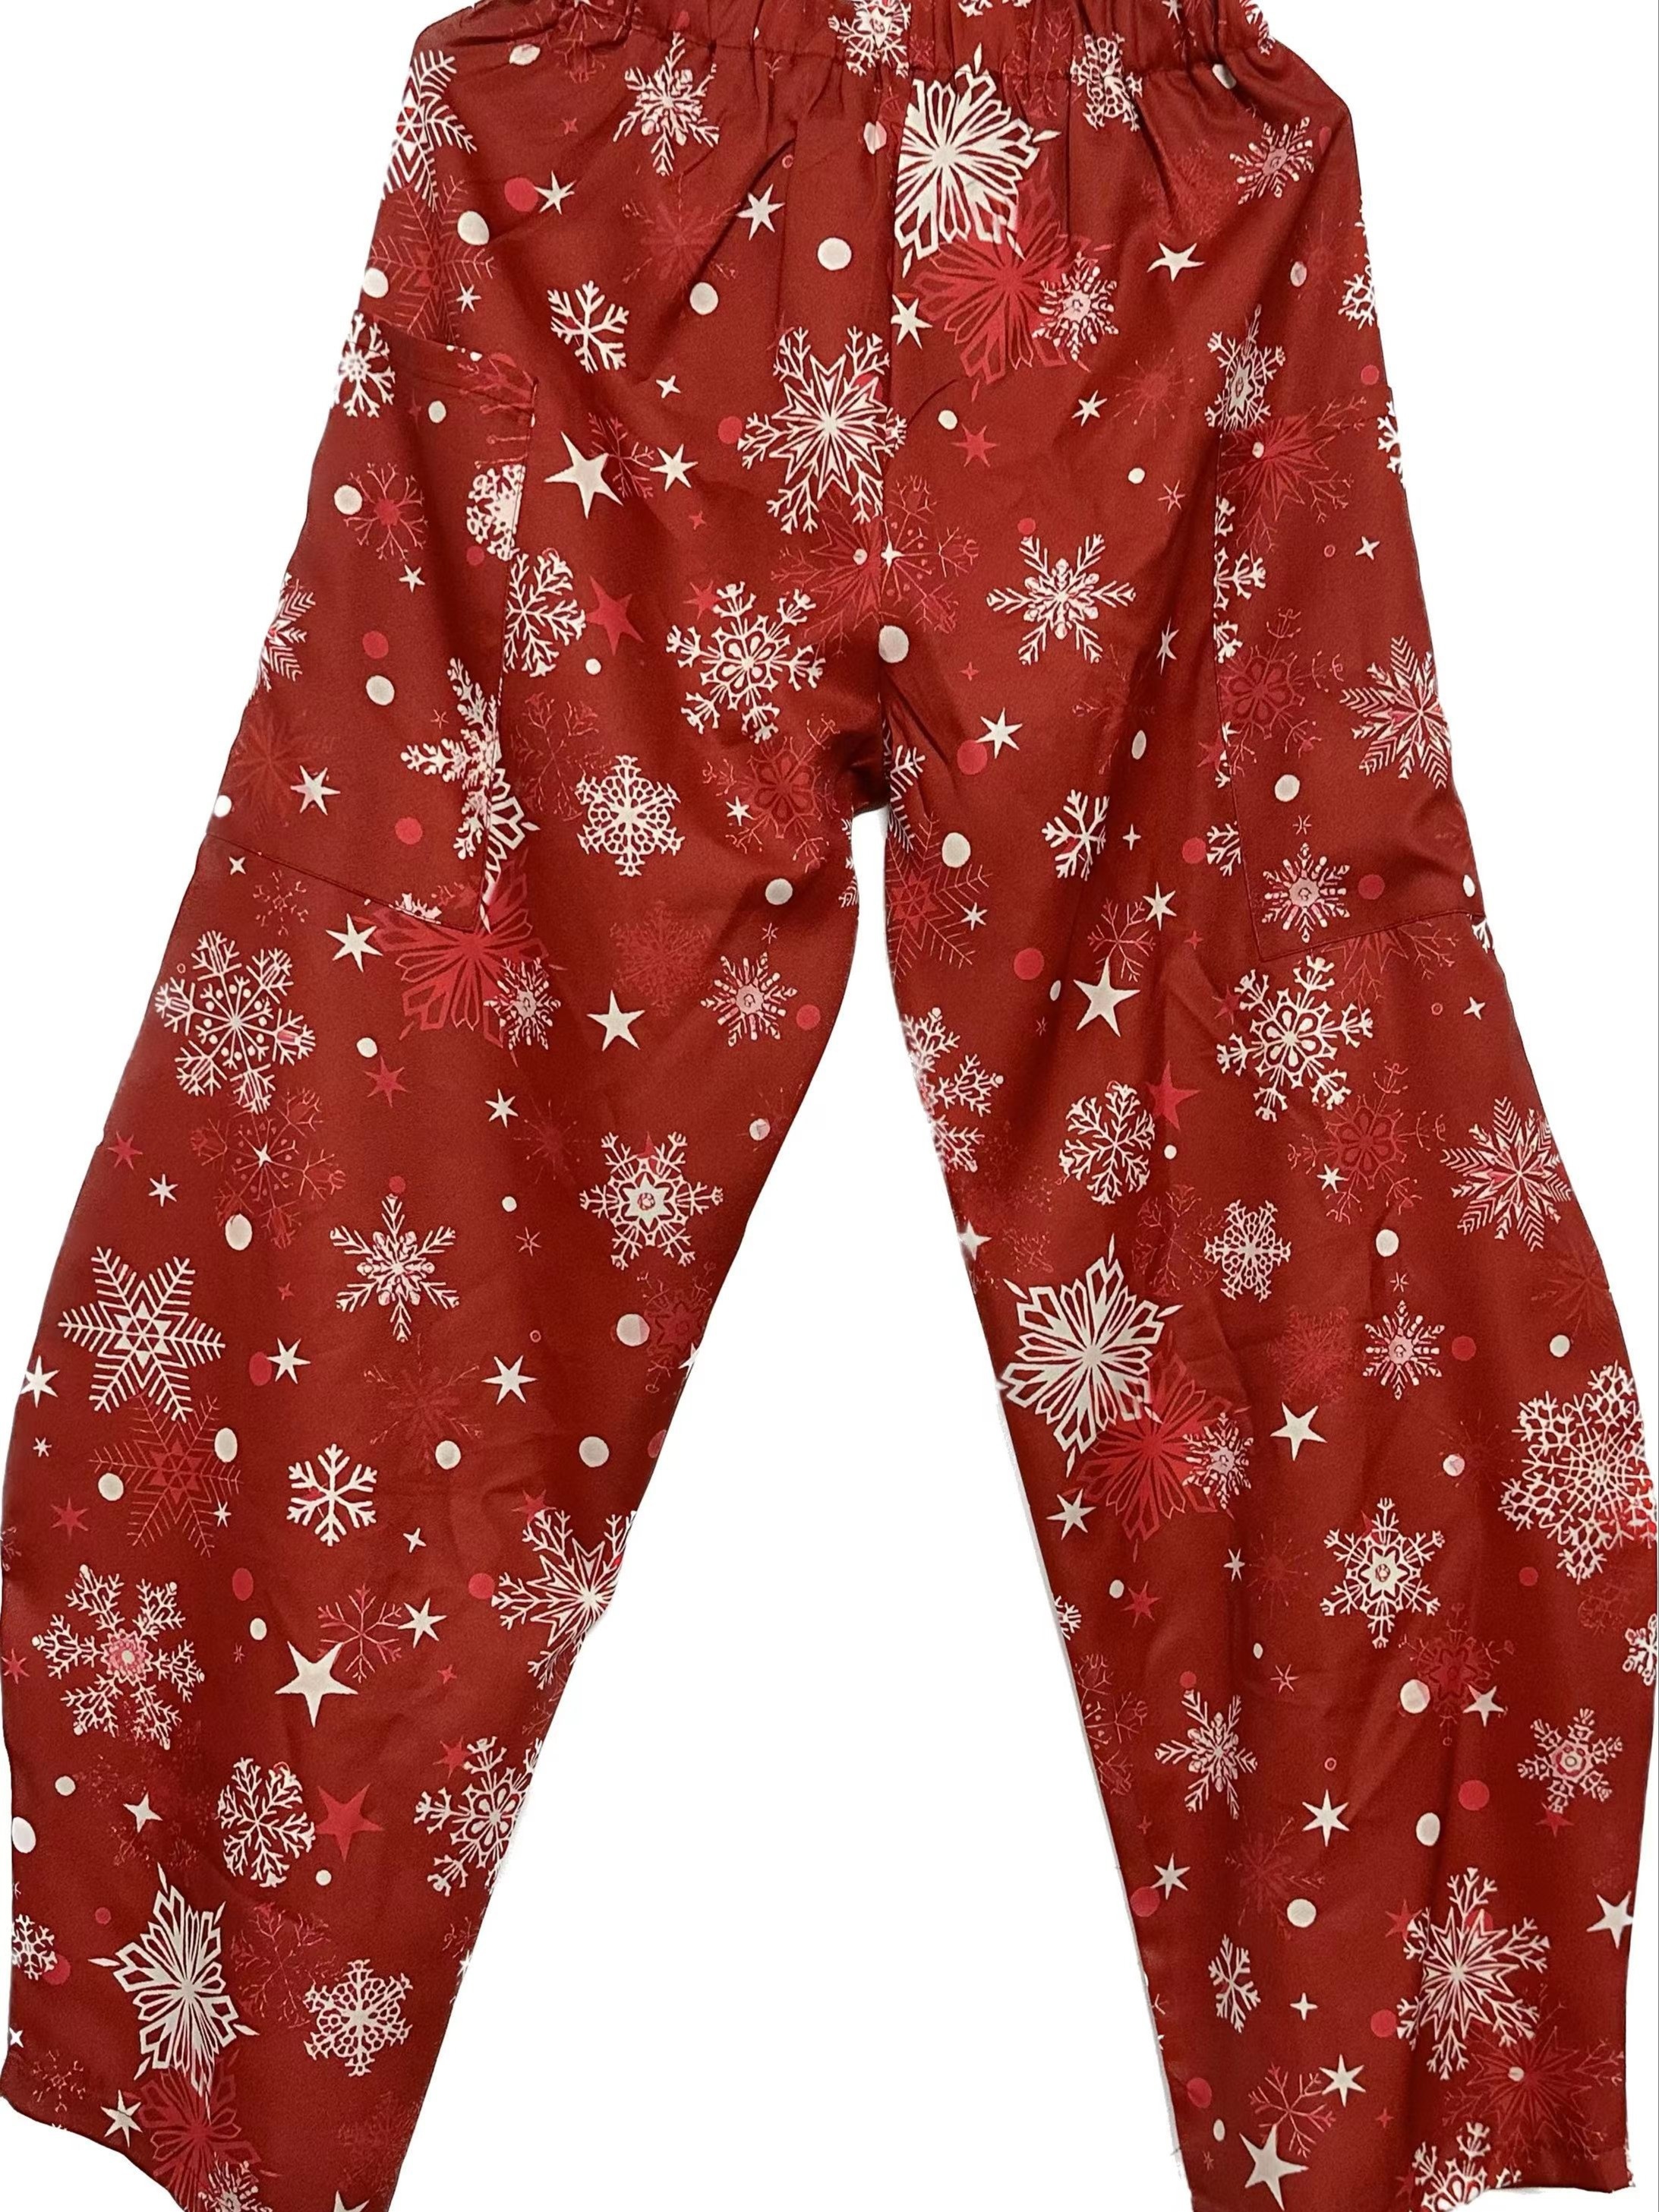 Pantalones deportivos de Navidad con estampado de copos de nieve